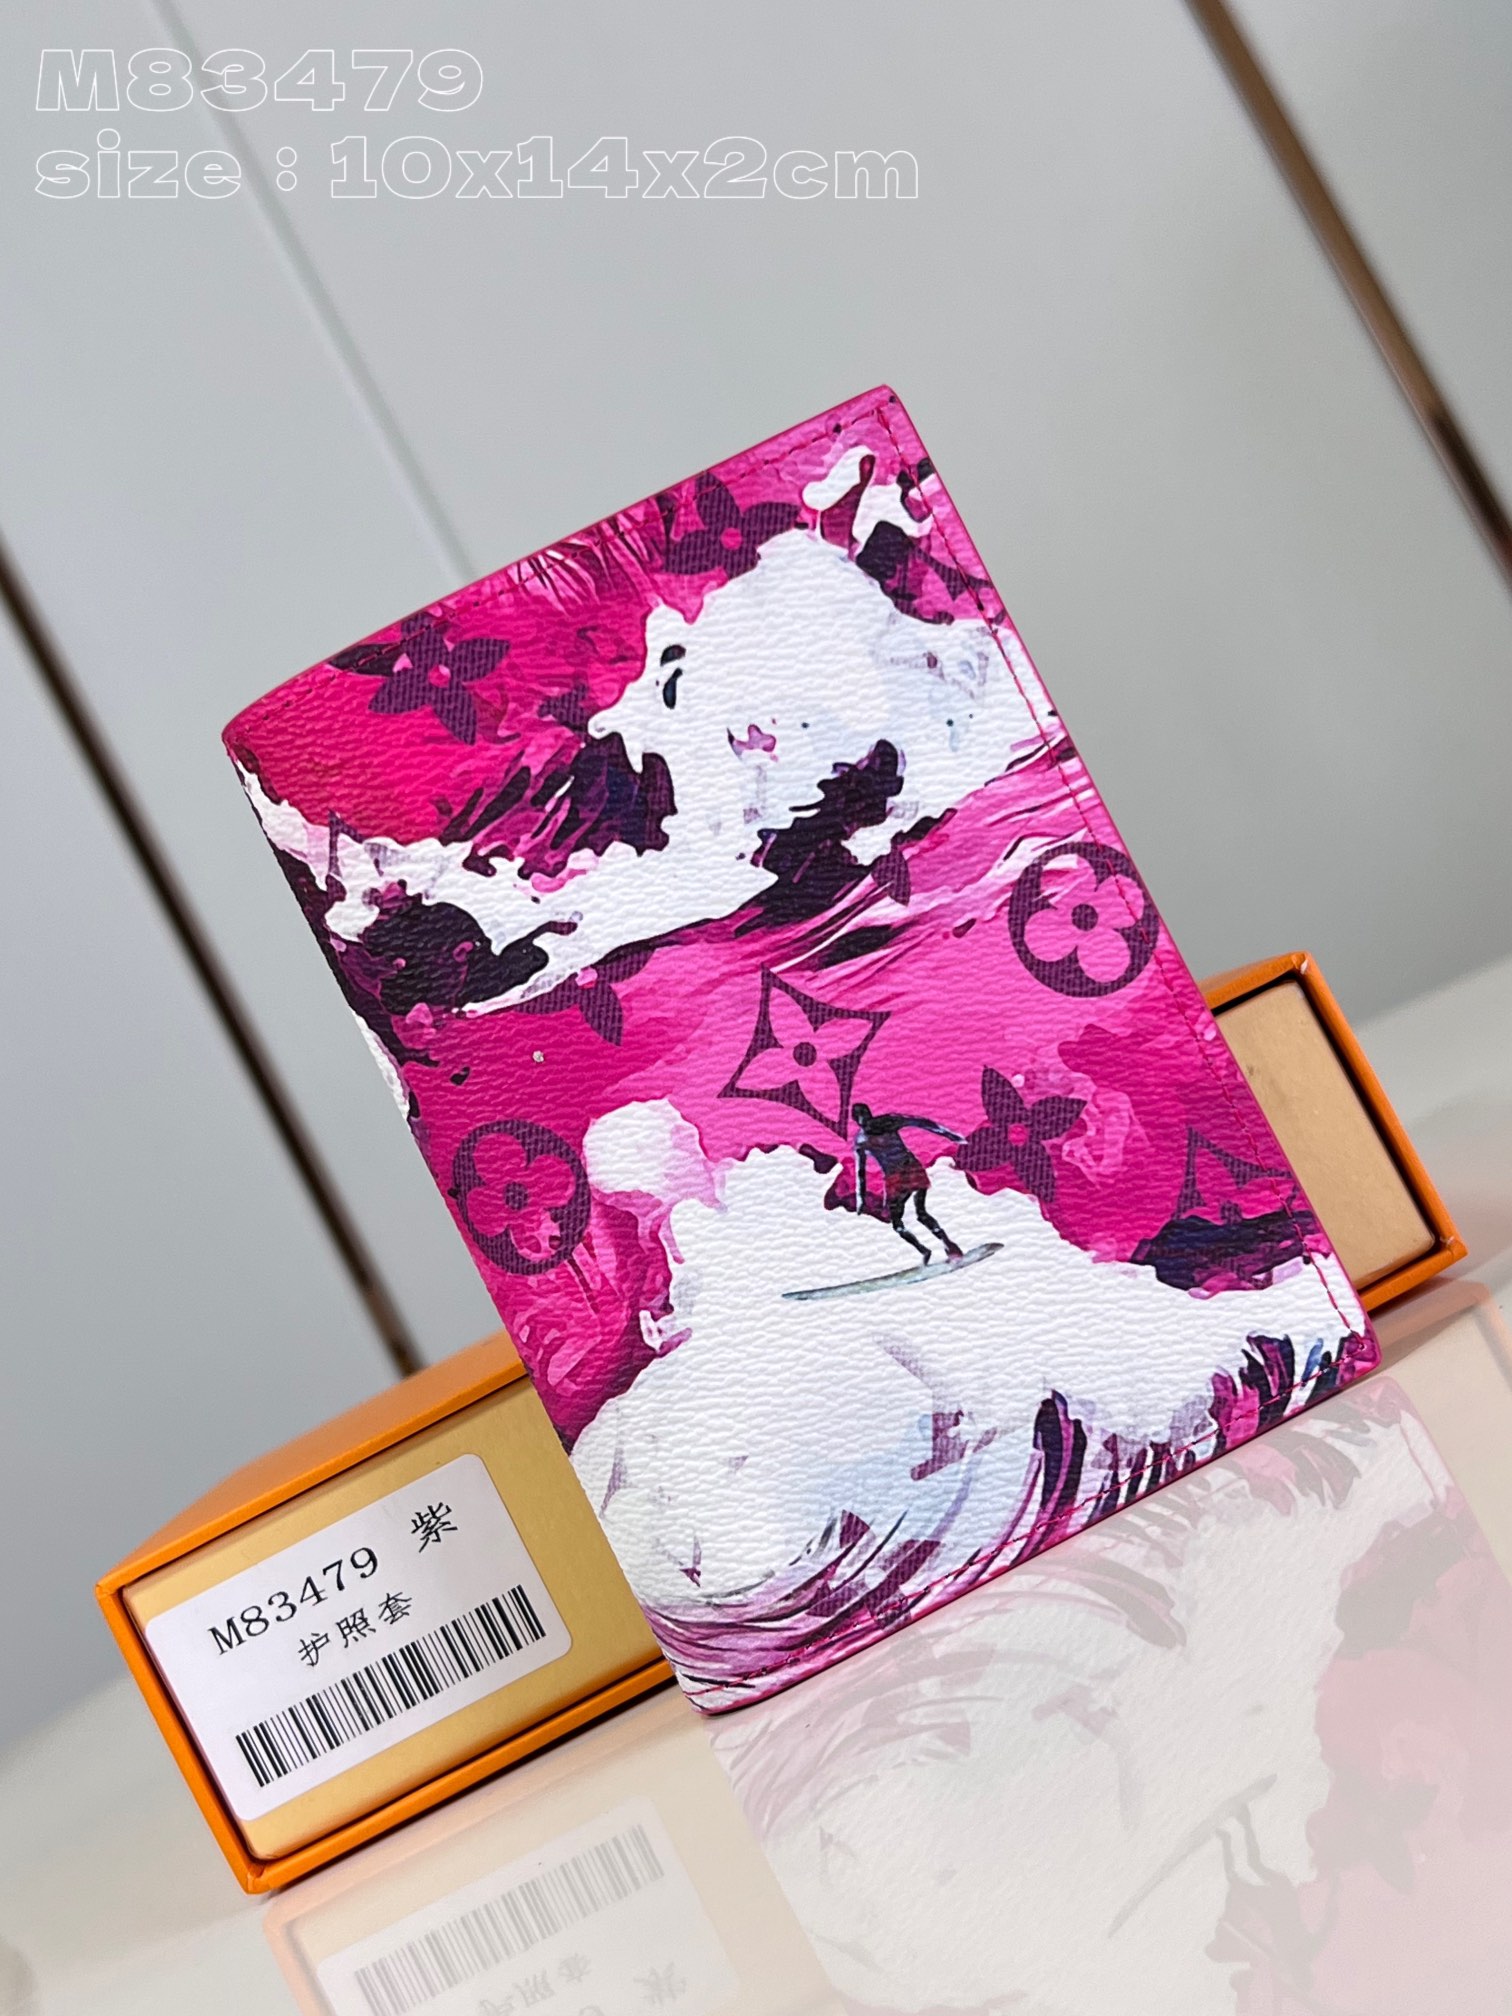  独家实拍 M83479紫   创意总监 Pharrell Williams 采用 Surfin  Monogram 帆布焕新护照套 以乘风破浪的弄潮儿 热带植物和 Monogram 元素交叠繁复印花 为经典设计注入灵动活力 10 x 14 x 2.5 厘米 长度 x 高 x 宽  